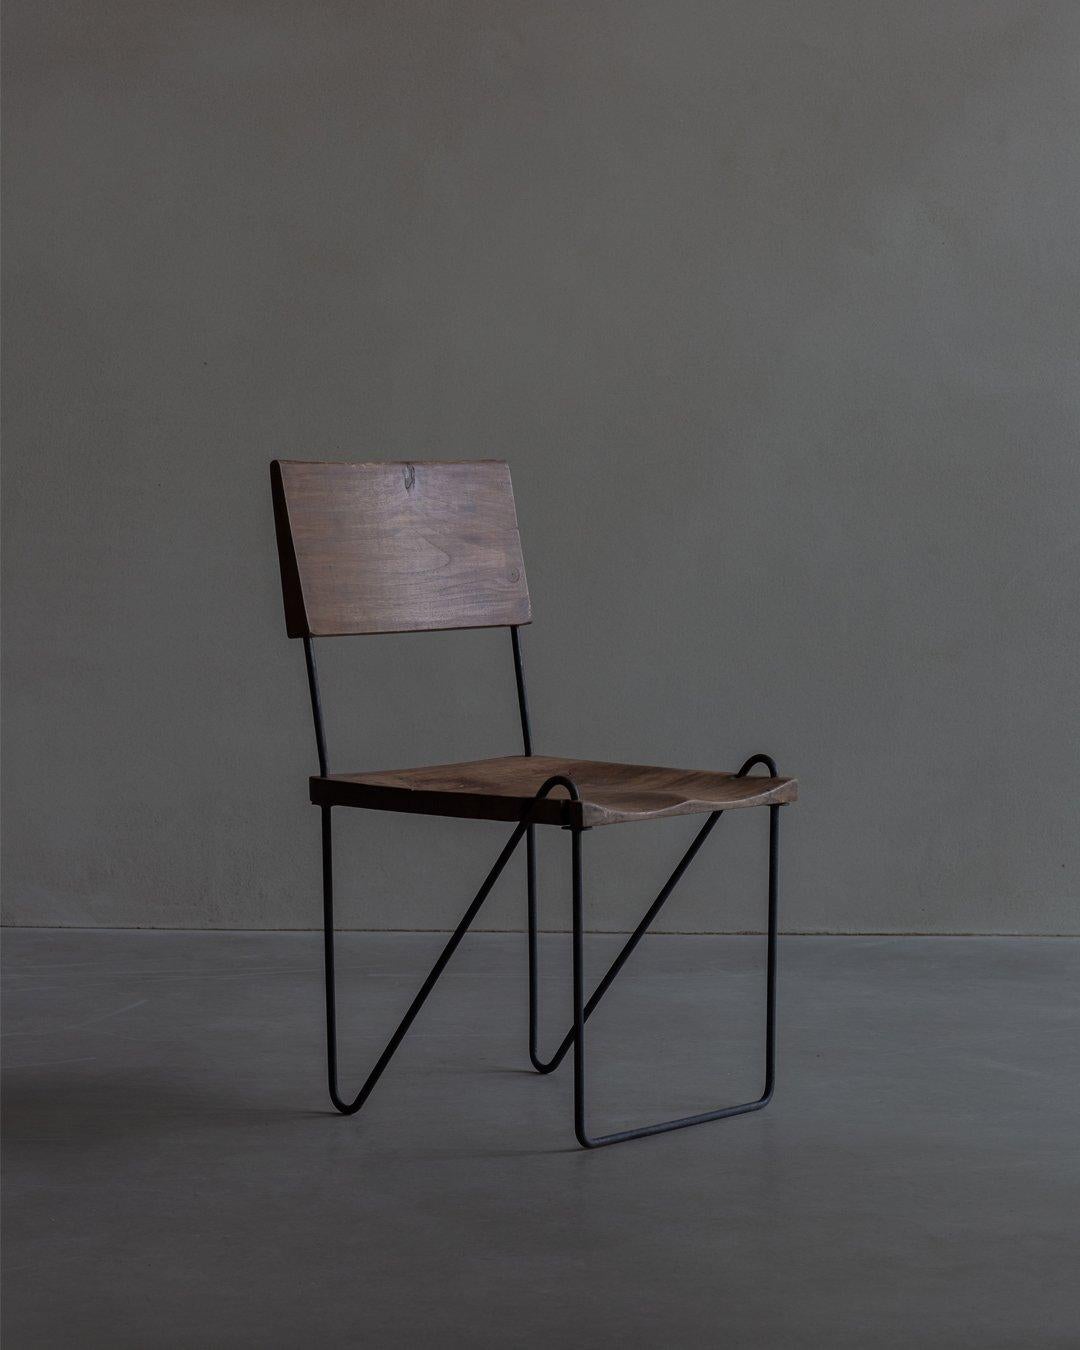 Chaise en teck et en fer, conçue par Pierre Jeanneret et datant de 1953-1954 environ. L'assise et le dossier sont en teck massif sculpté. Le dossier est légèrement incliné et sculpté de motifs complexes. Le siège est également sculpté dans du teck